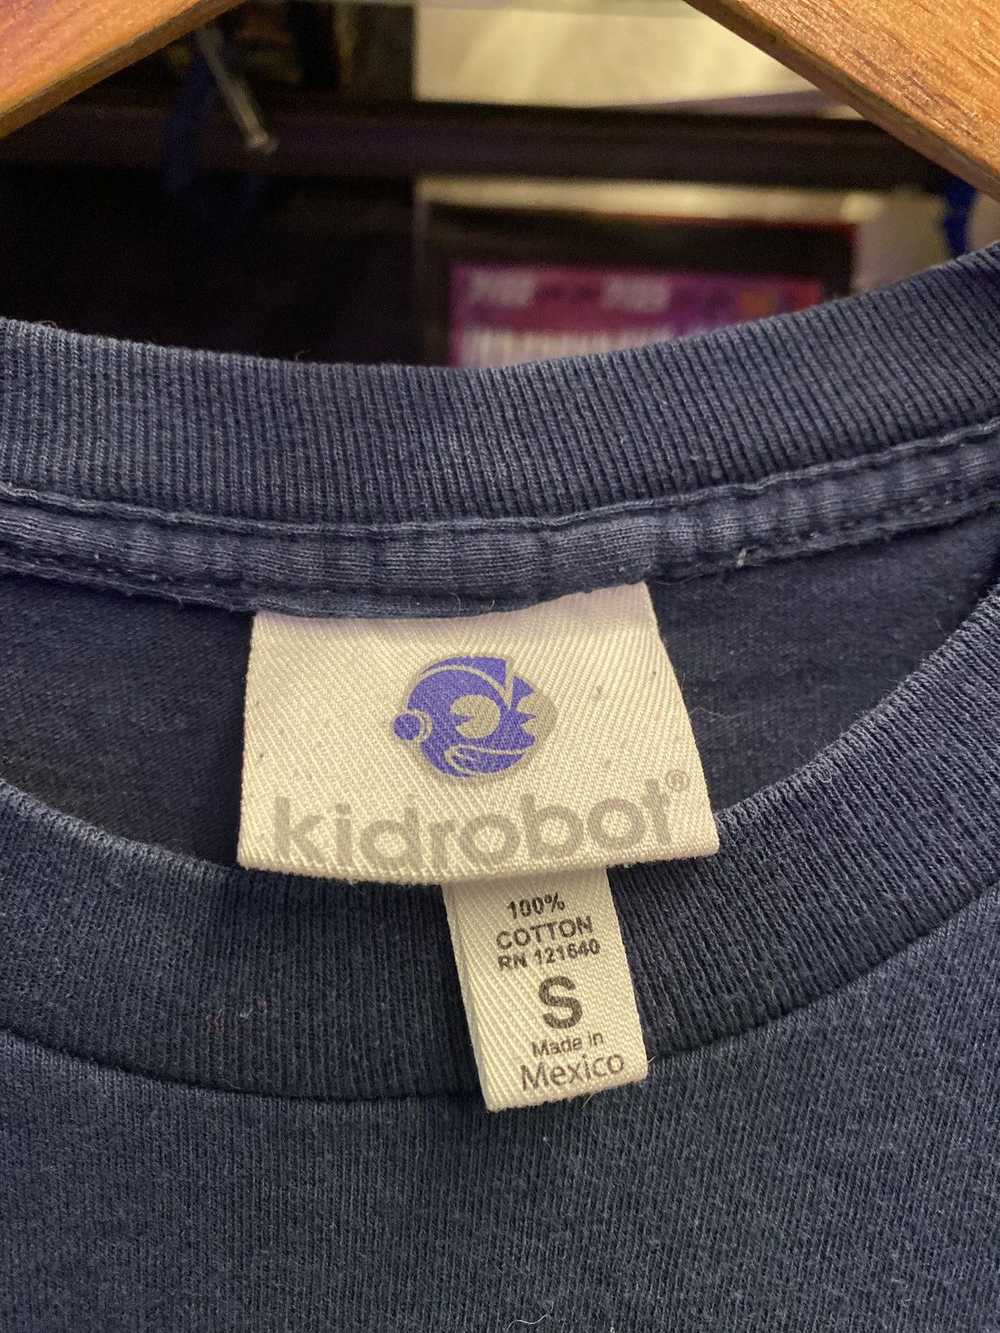 Kid Robot × Streetwear Kozik x Kid Robot - image 3